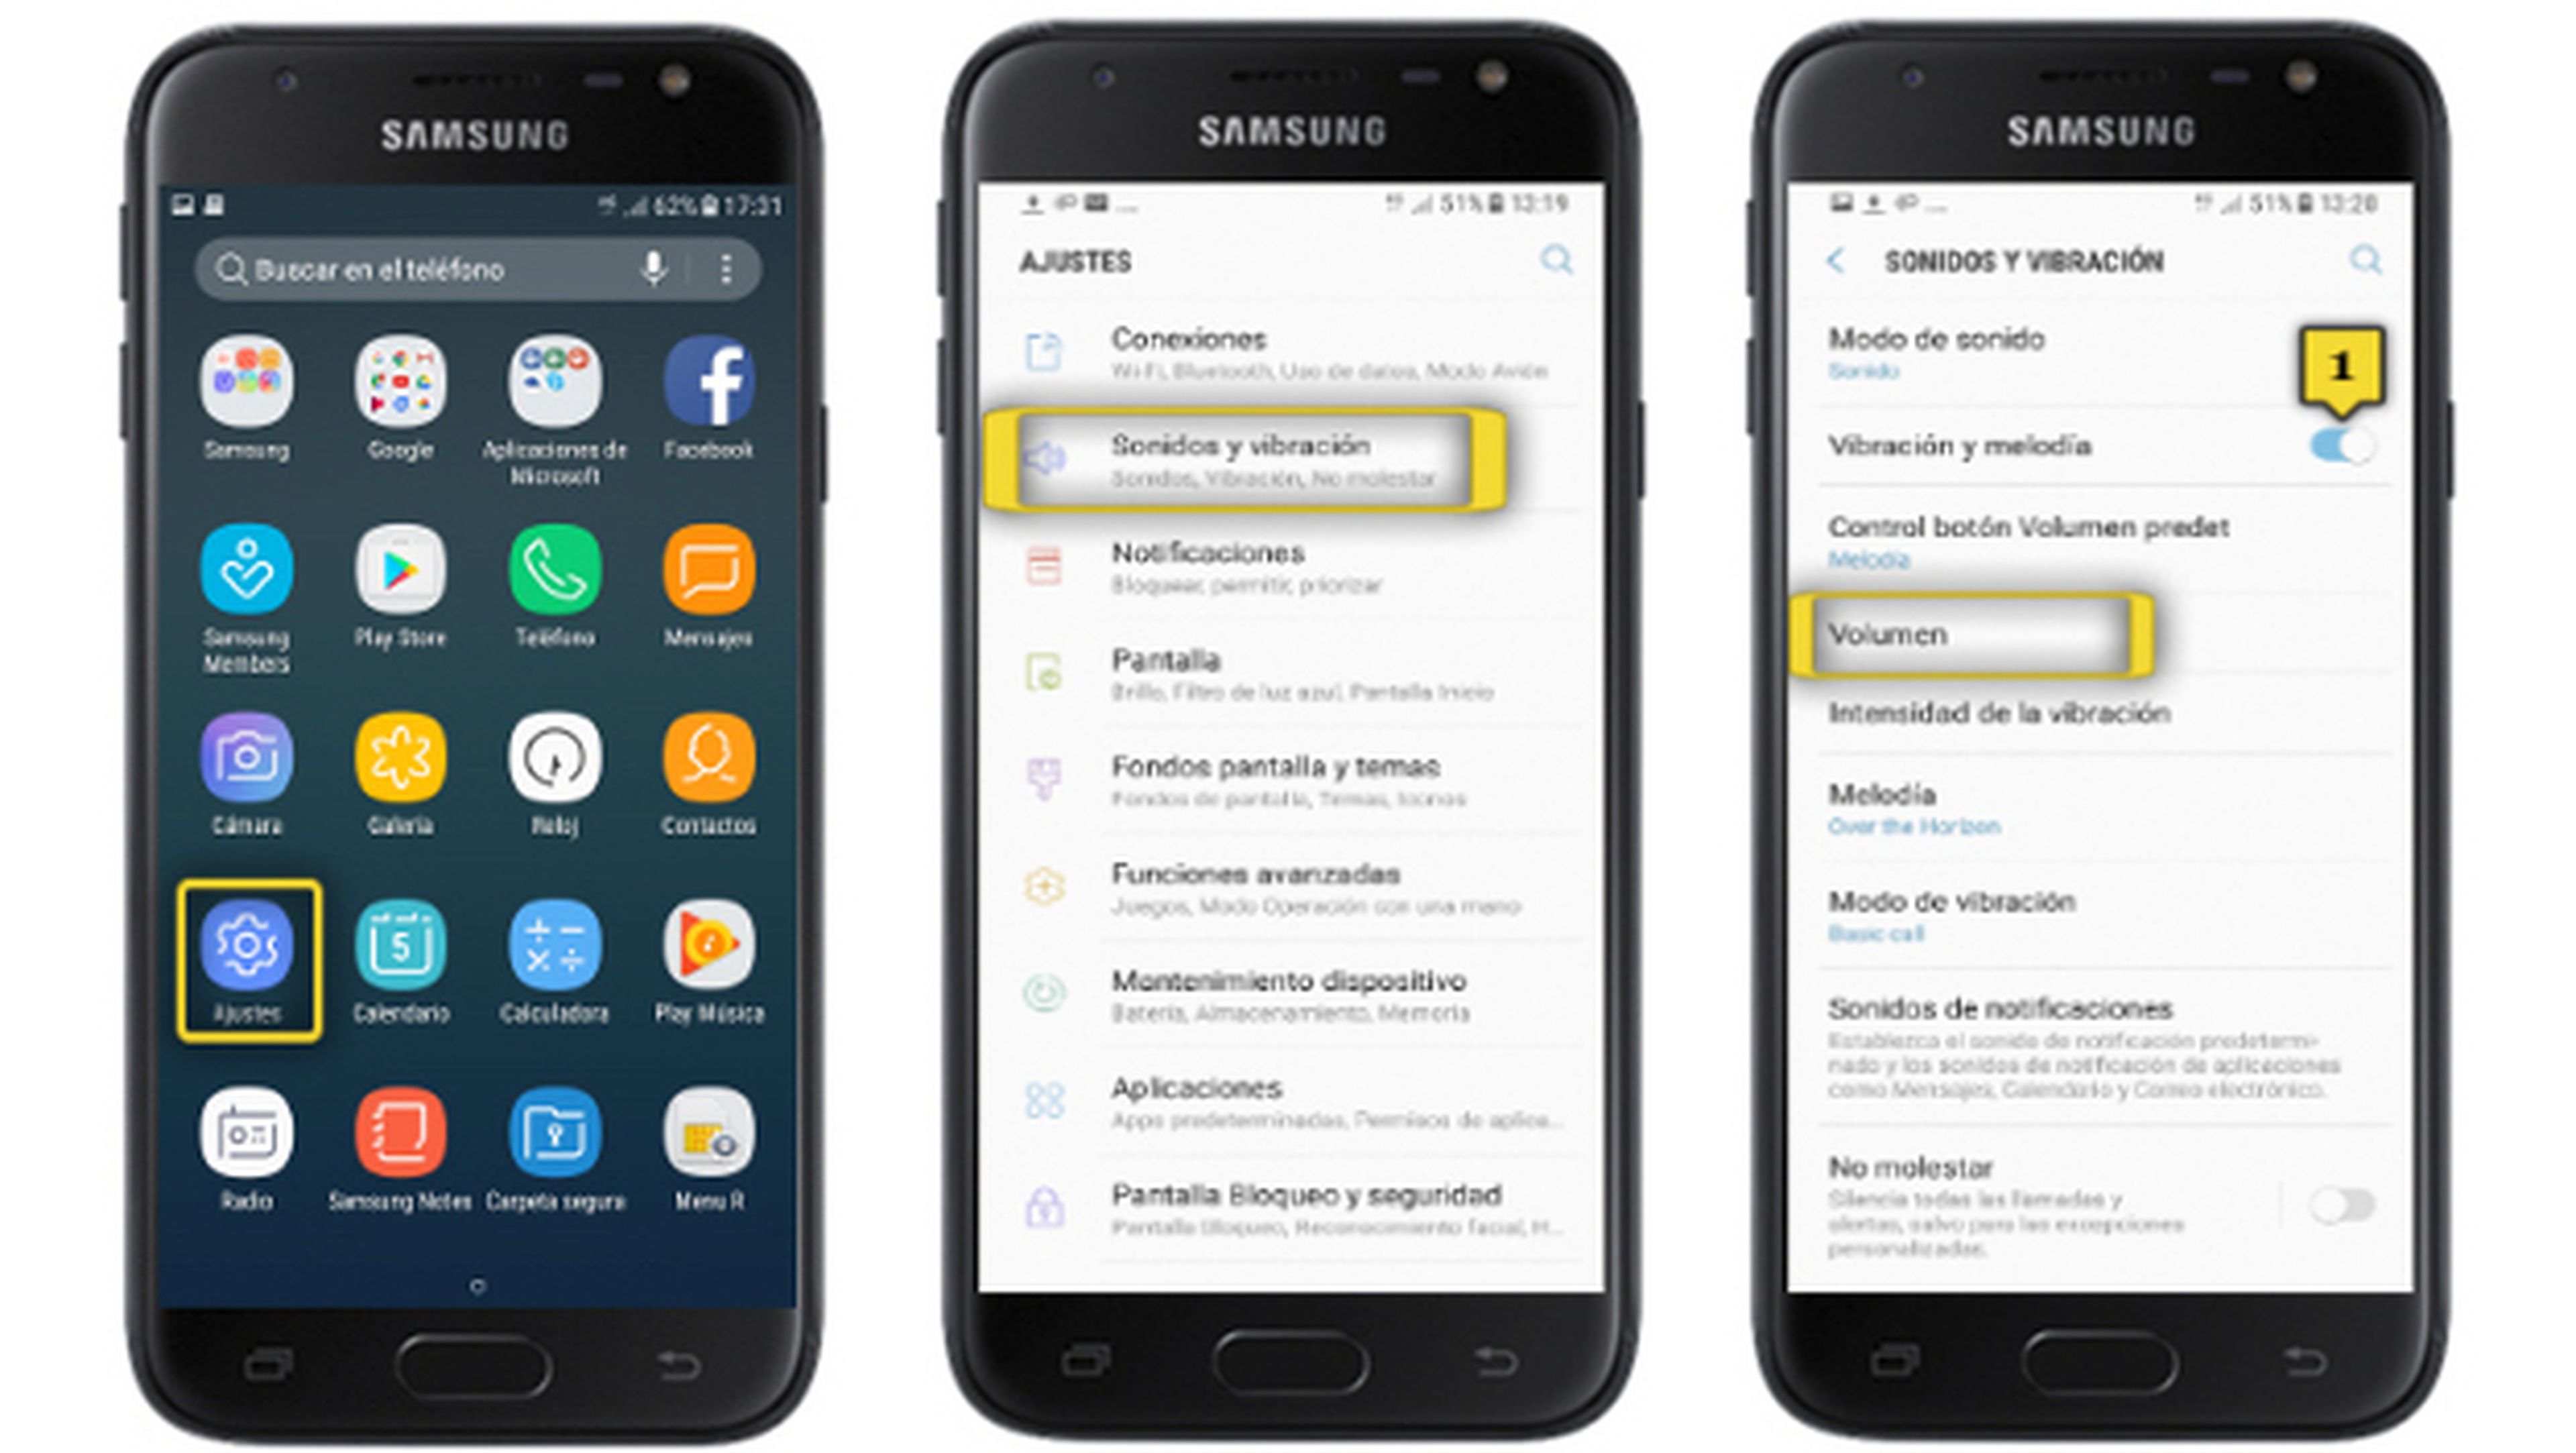 Samsung Galaxy J5 2017: Desactivar la vibración para llamadas